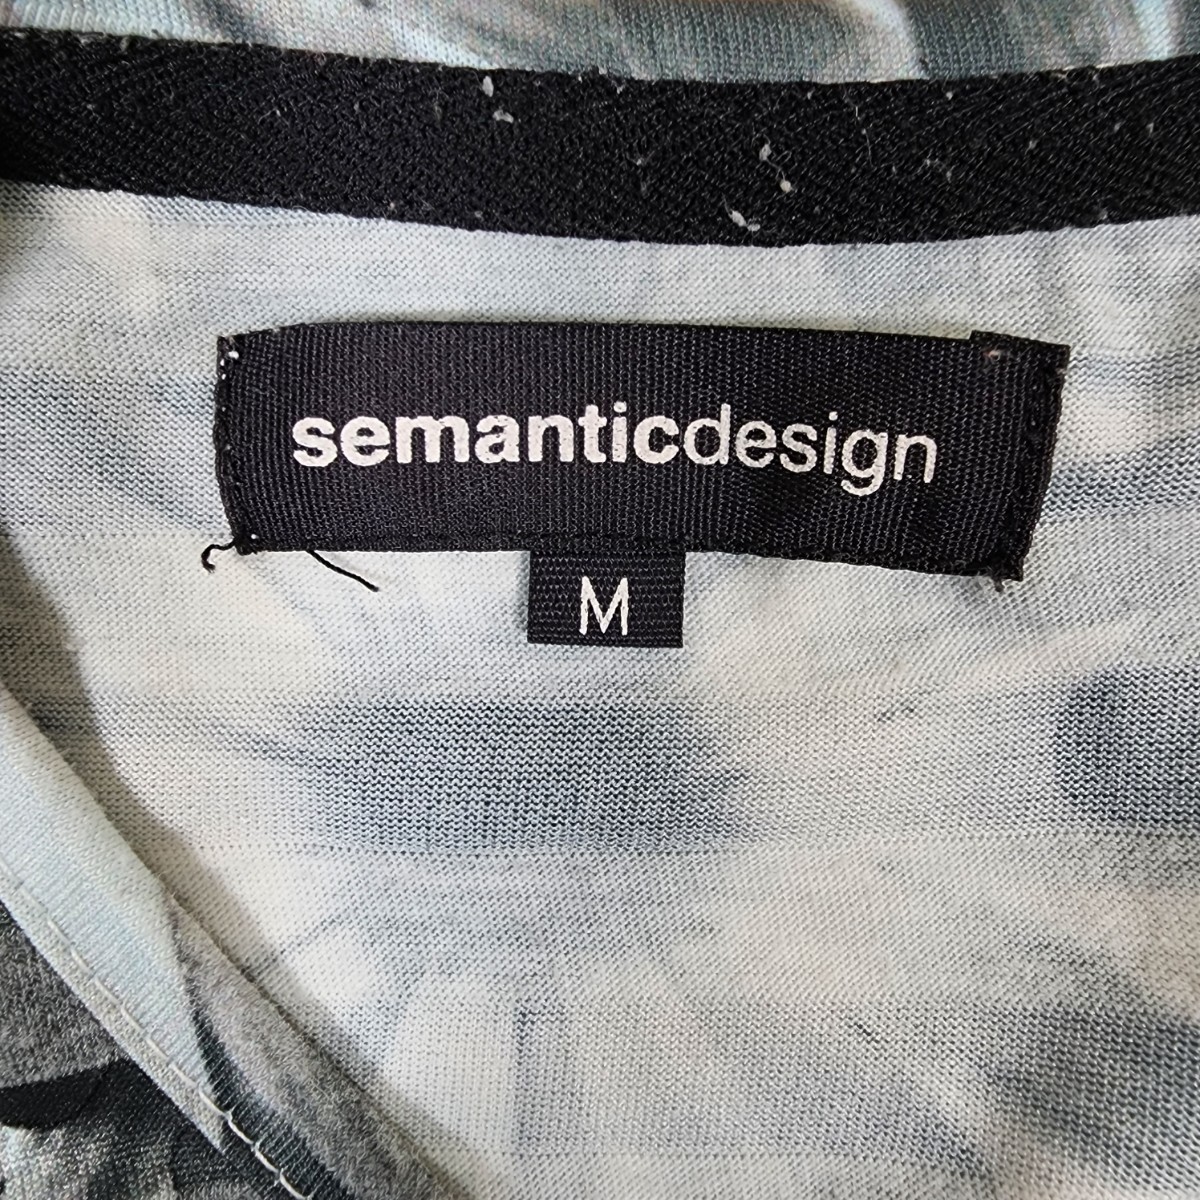 Y3 semanticdesign セマンティックデザイン タカキュー メンズ Tシャツ 半袖 かわいい M グレー 灰 ボーダー フラワー 花柄 